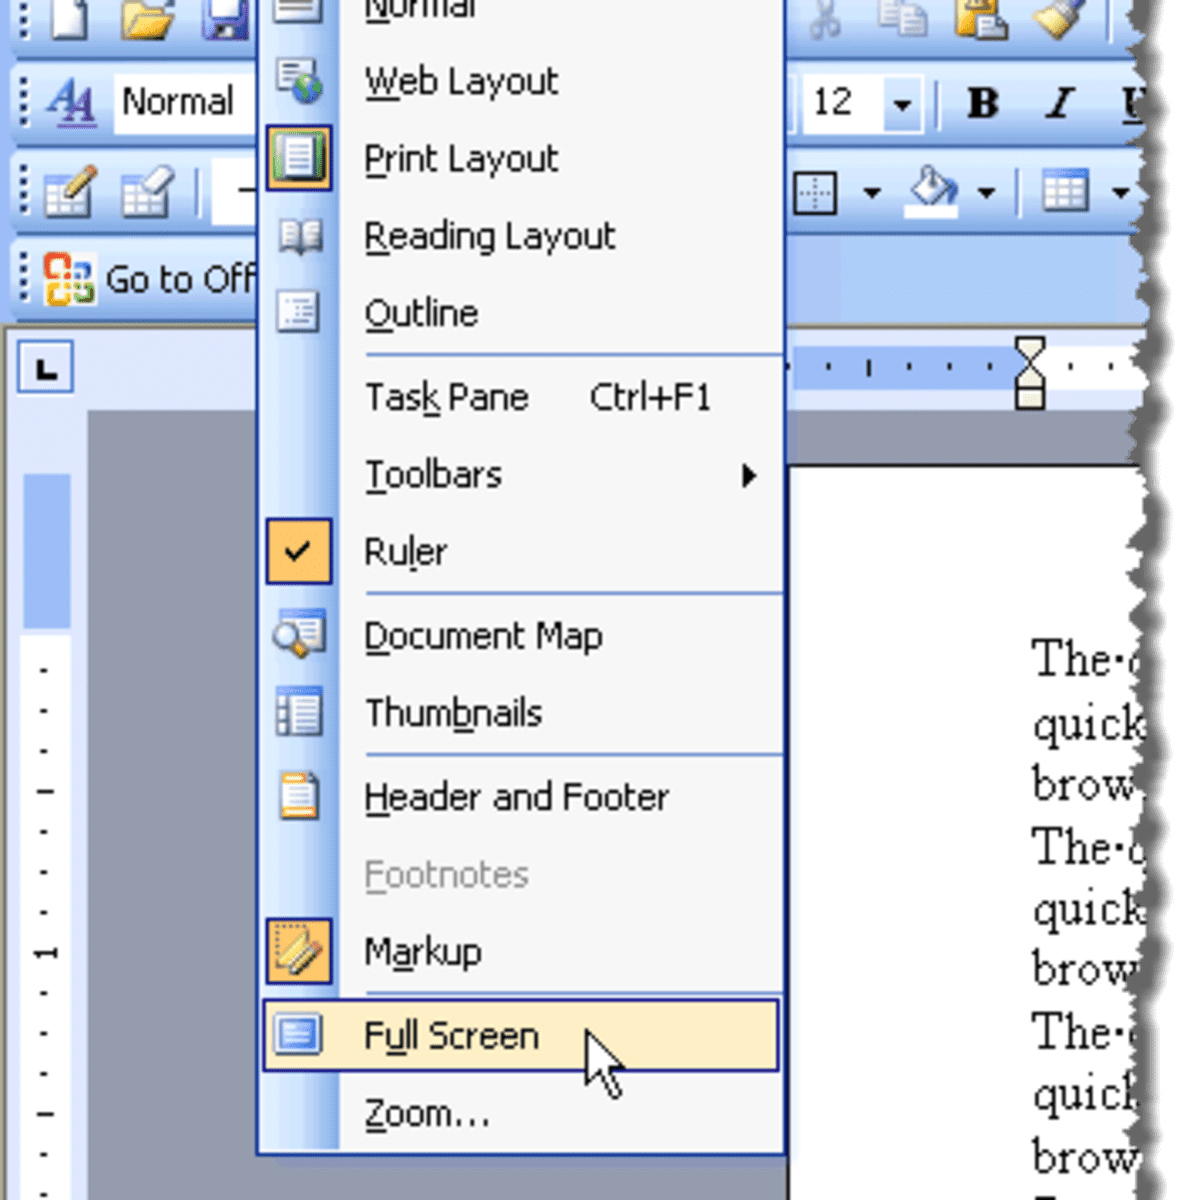 View Menu in MS Word 2003 - HubPages